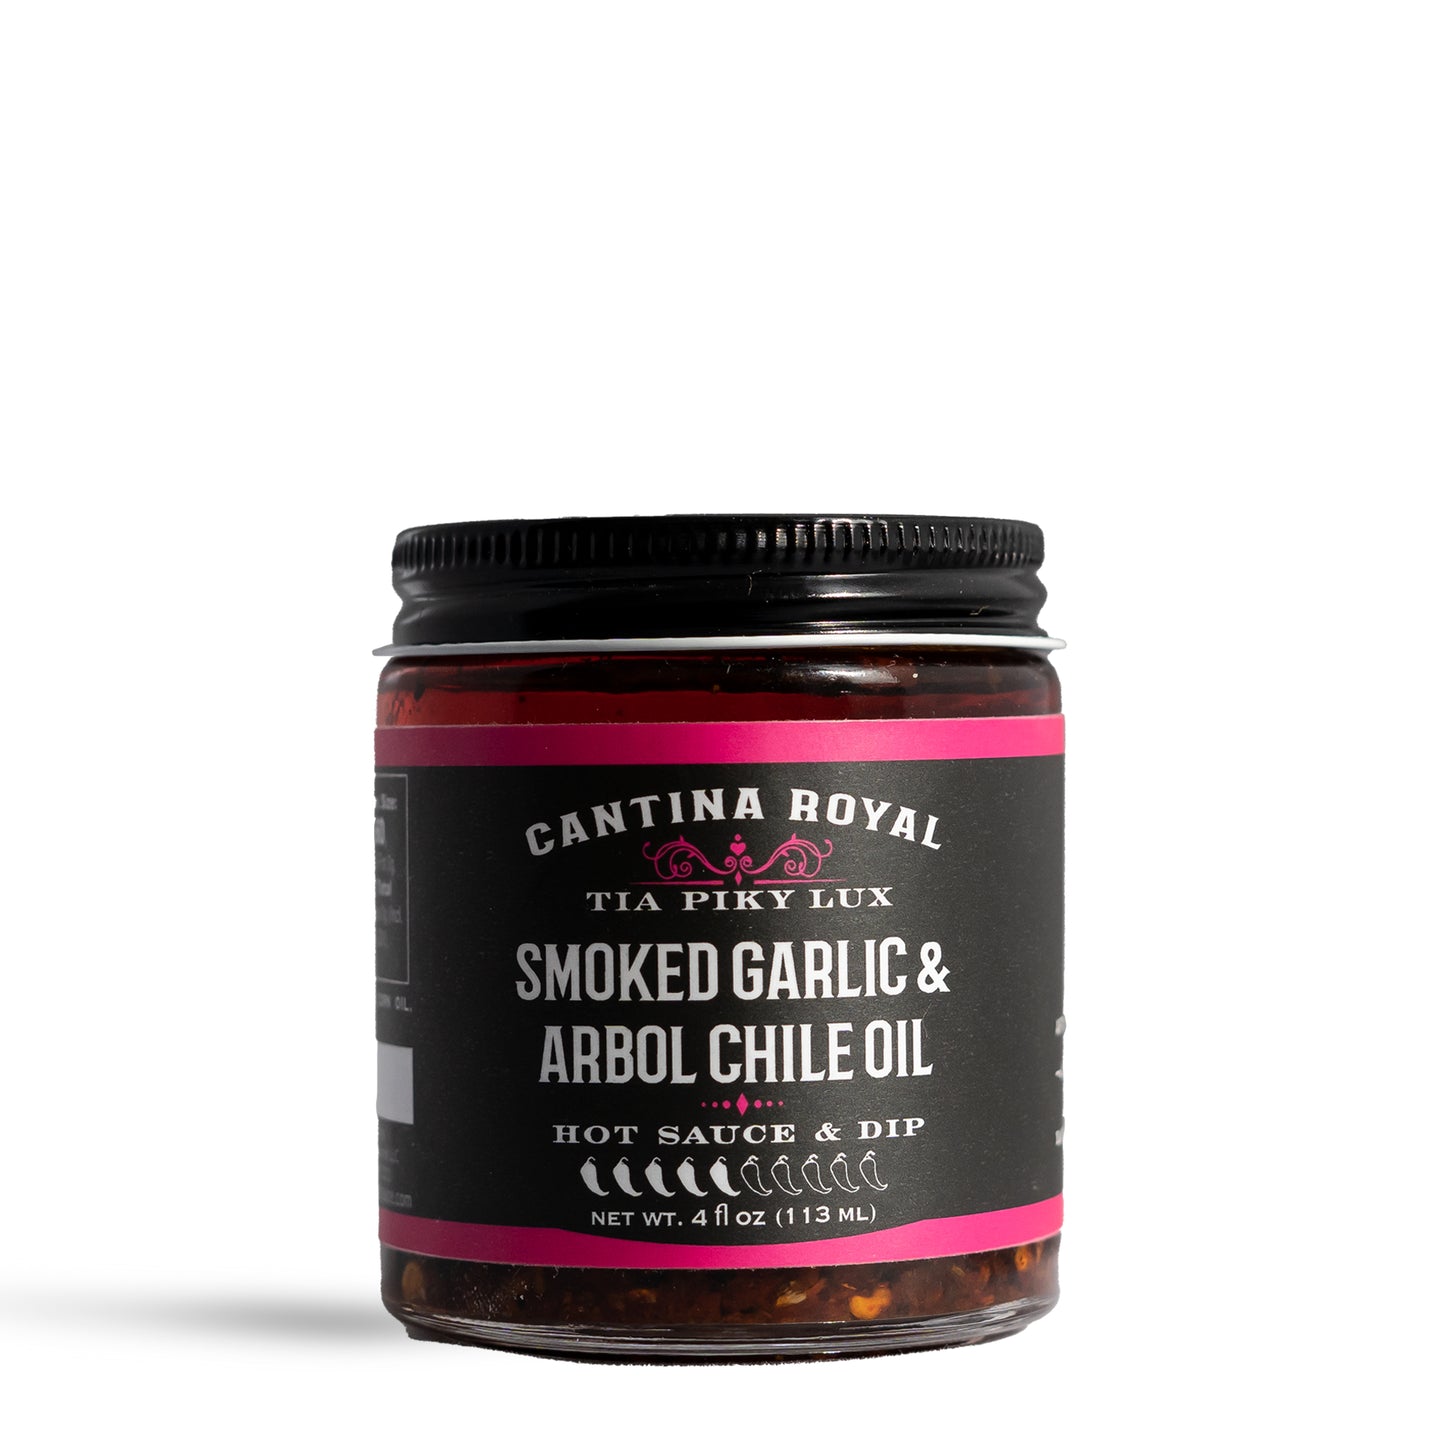 Tia Piky Lux - Smoked Garlic & Arbol Chile Oil